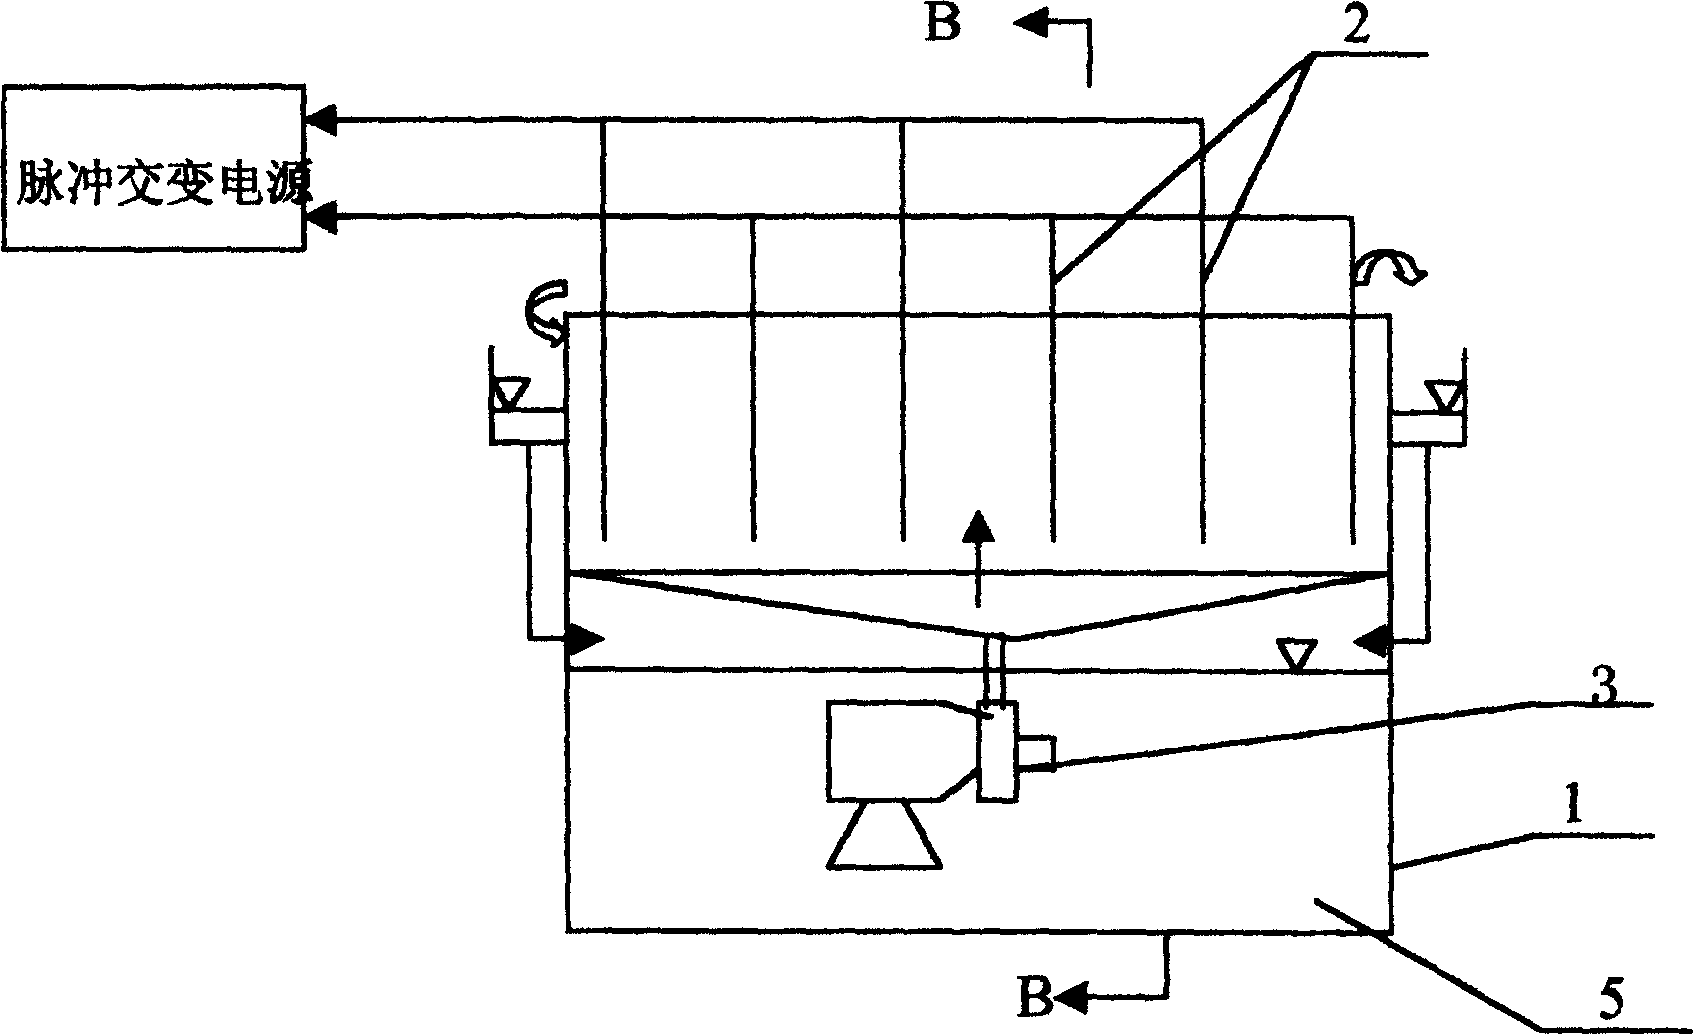 Method and apparatus for preparing flocculant